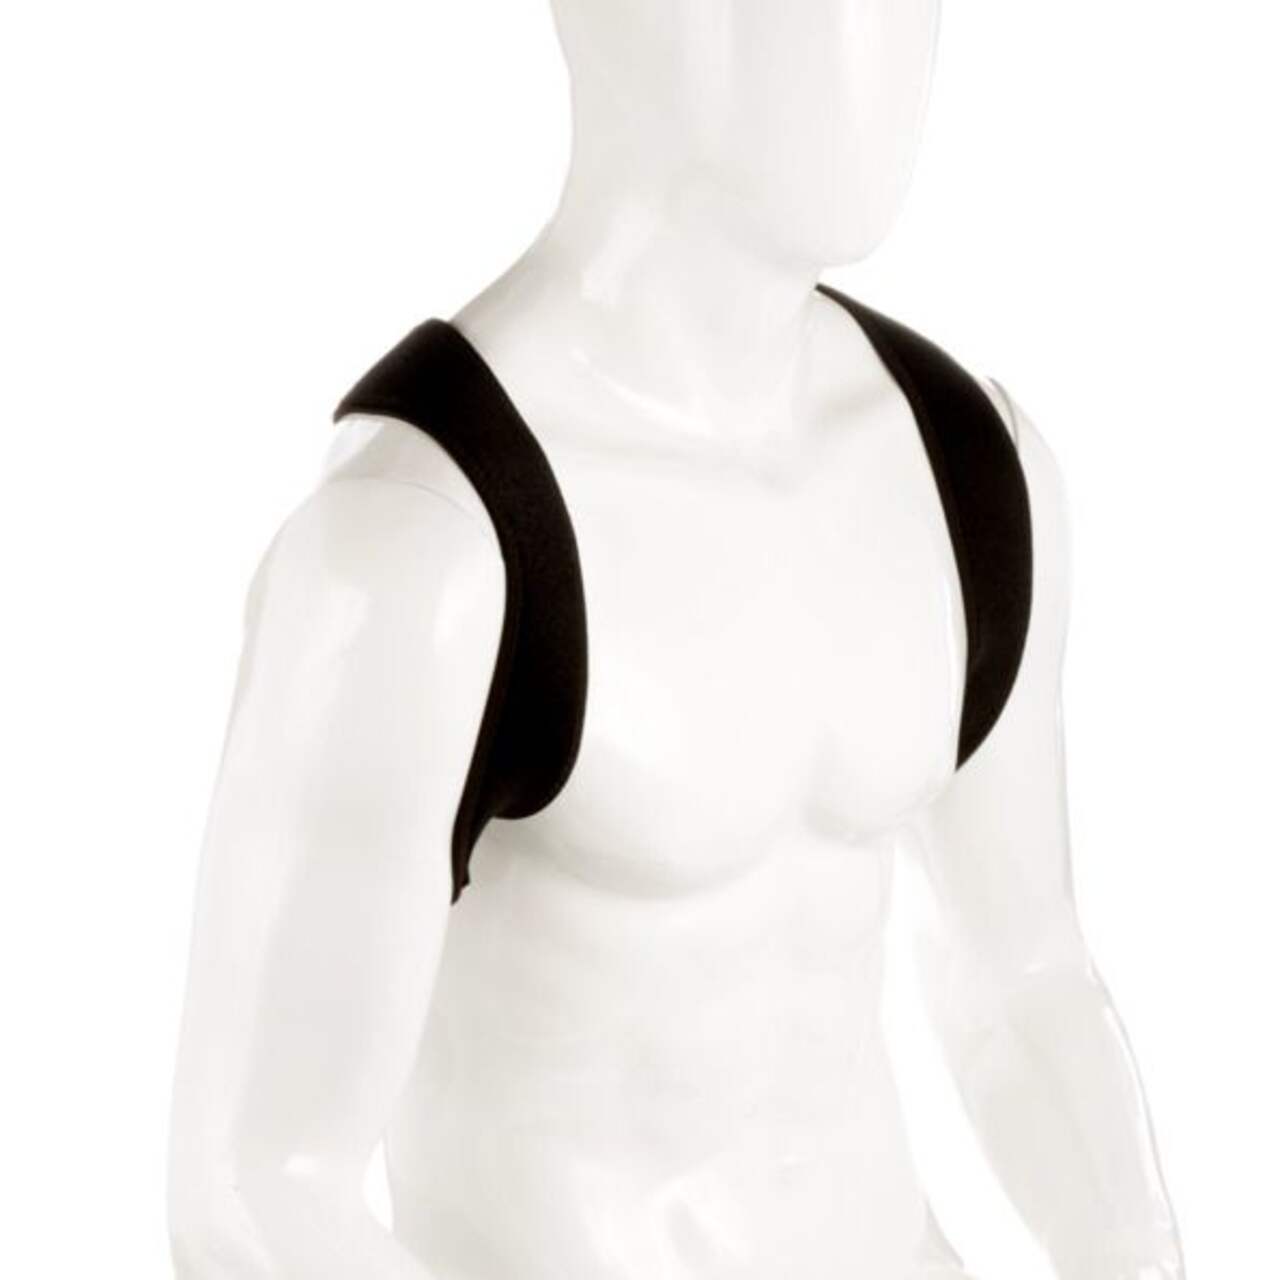 Adjustable Upper Back Shoulder Support Posture Corrector Adult Corset Spine  Brace Back Belt, Size:M(Black), ZA